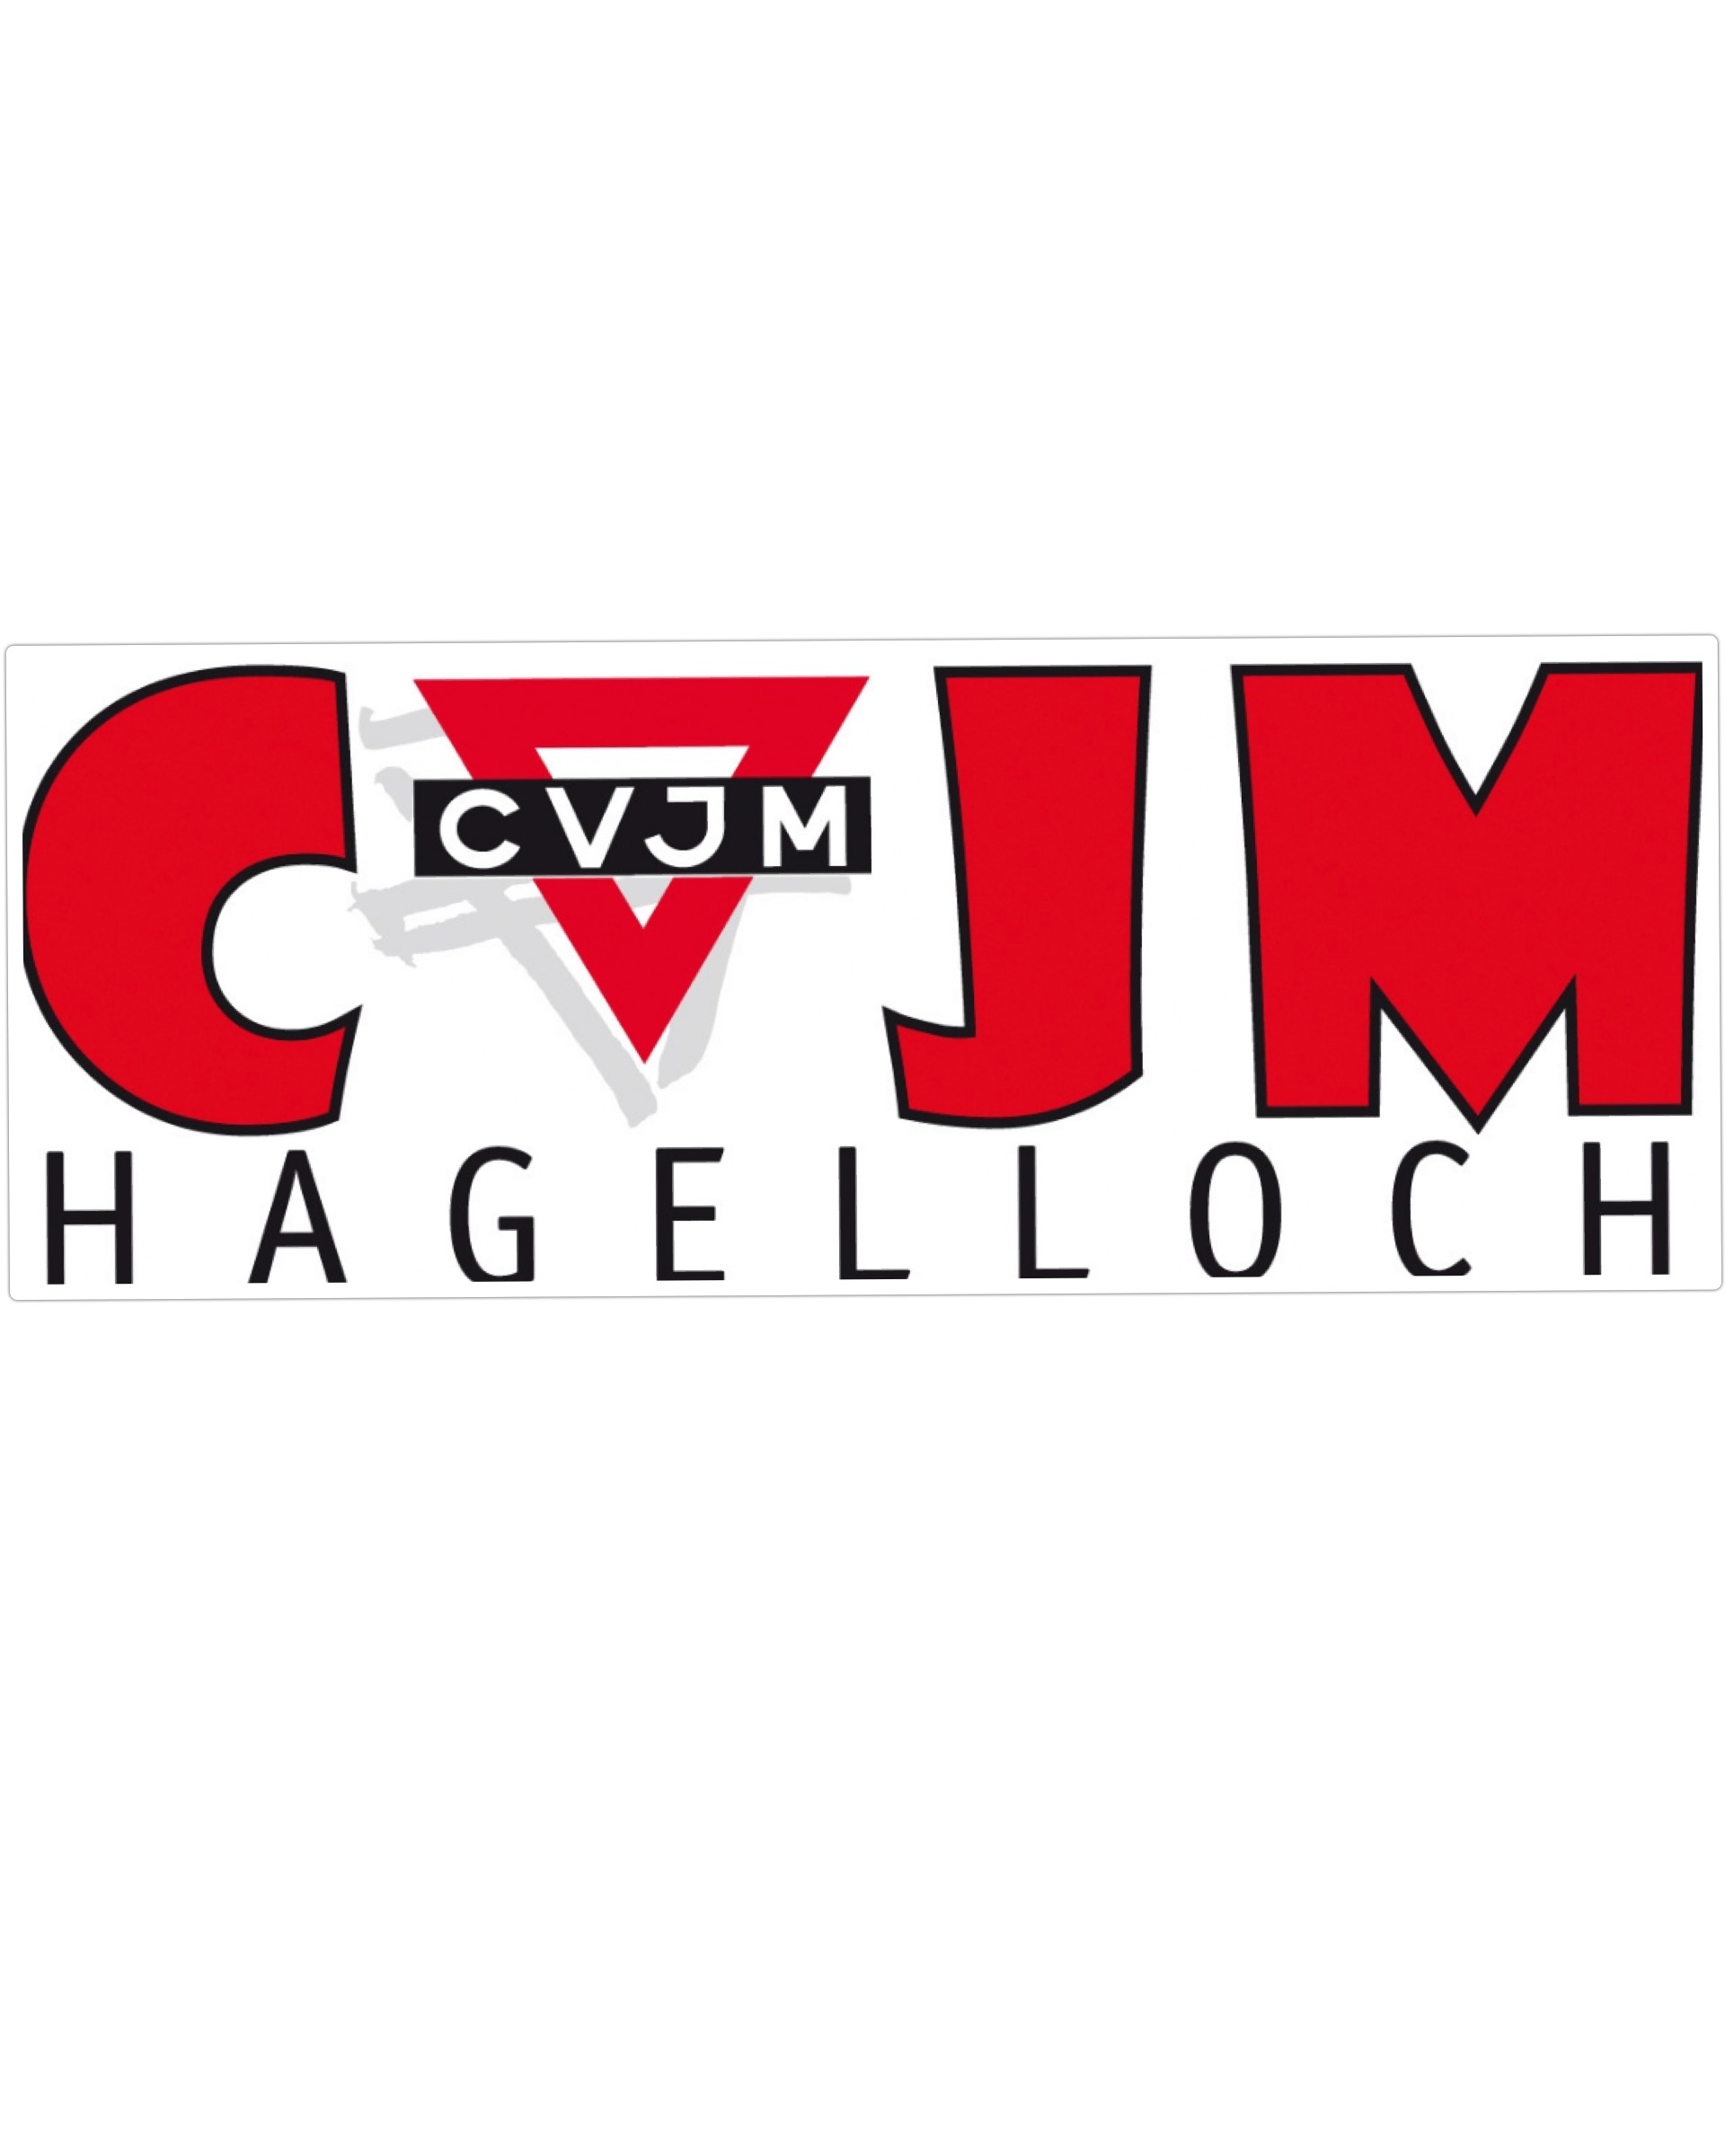 CVJM Hagelloch SG Hagelloch/Kusterdingen